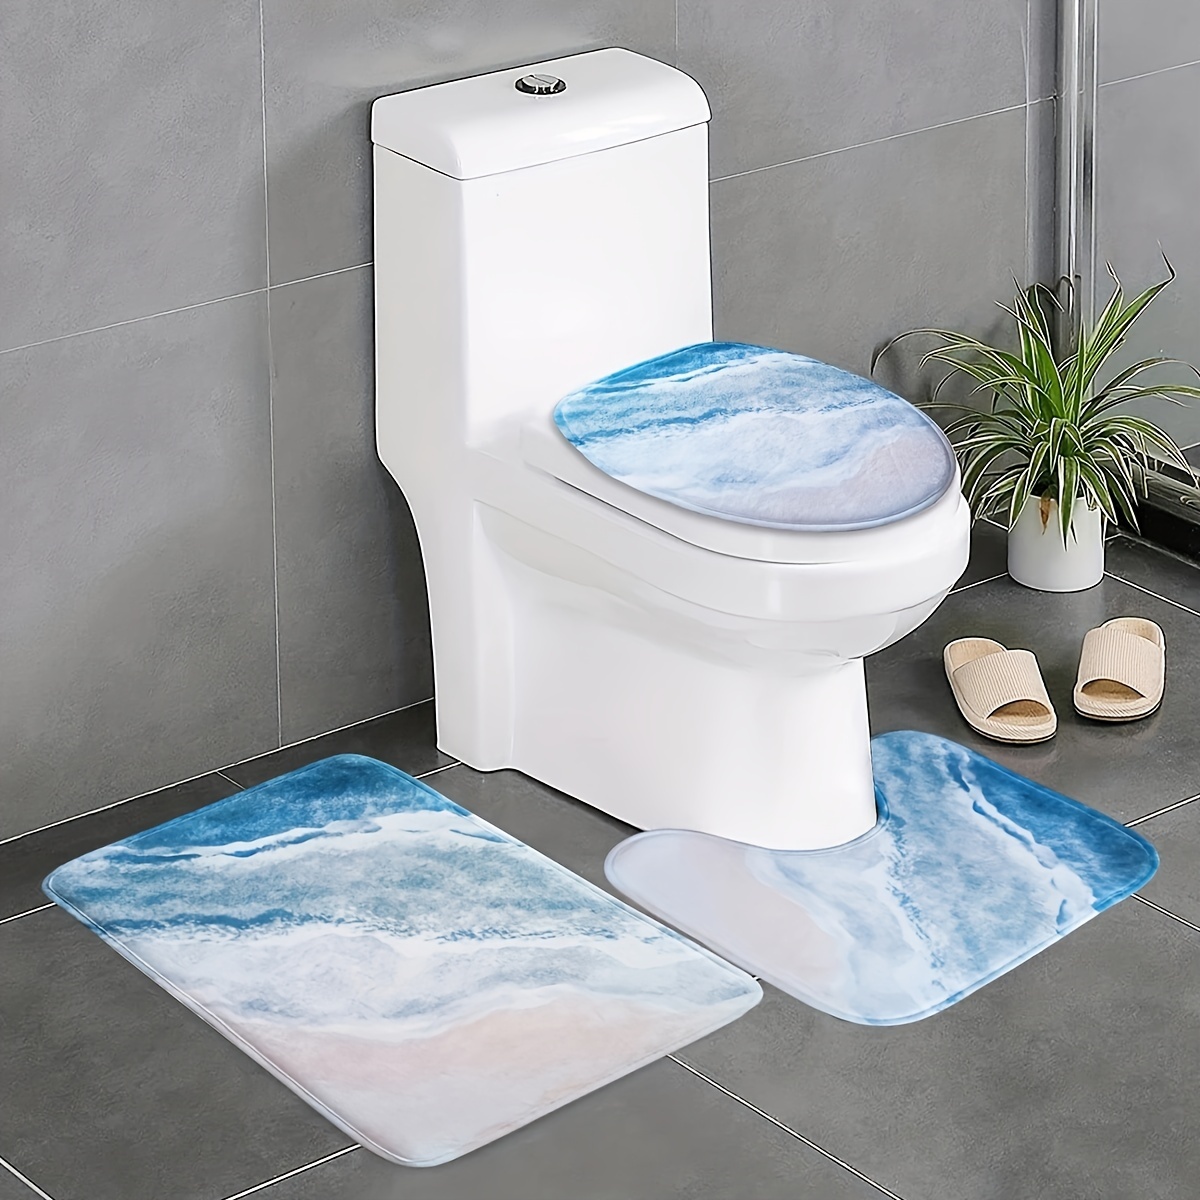 Bathroom Water Absorbent Anti-slip Floor Mat